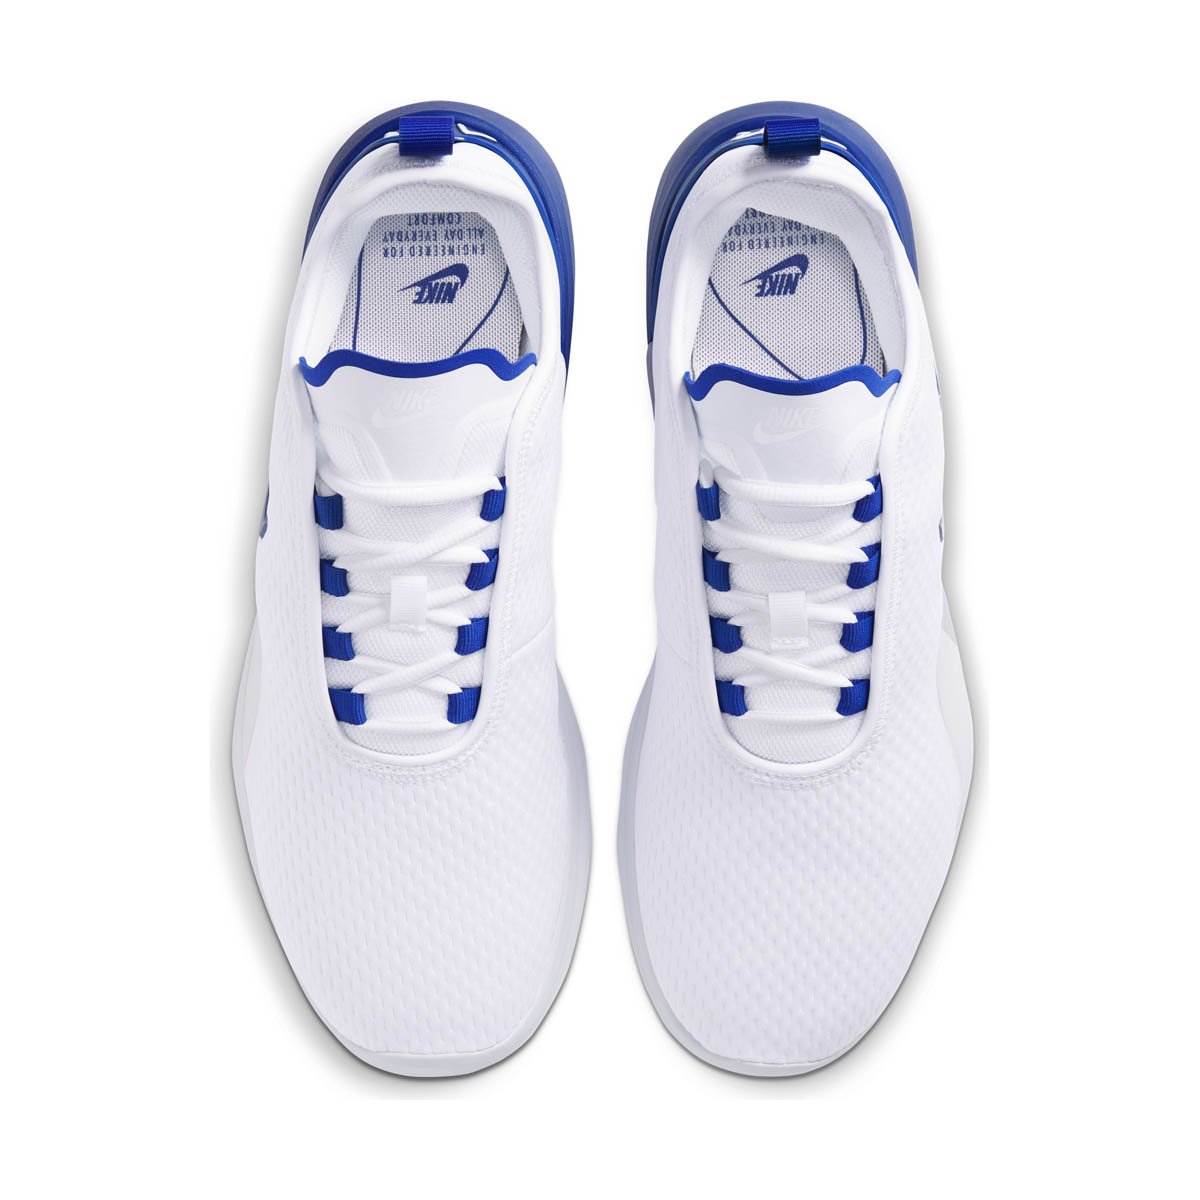 Farmacologie pond gehandicapt Men's Nike Air Max Motion 2 - Millennium Shoes